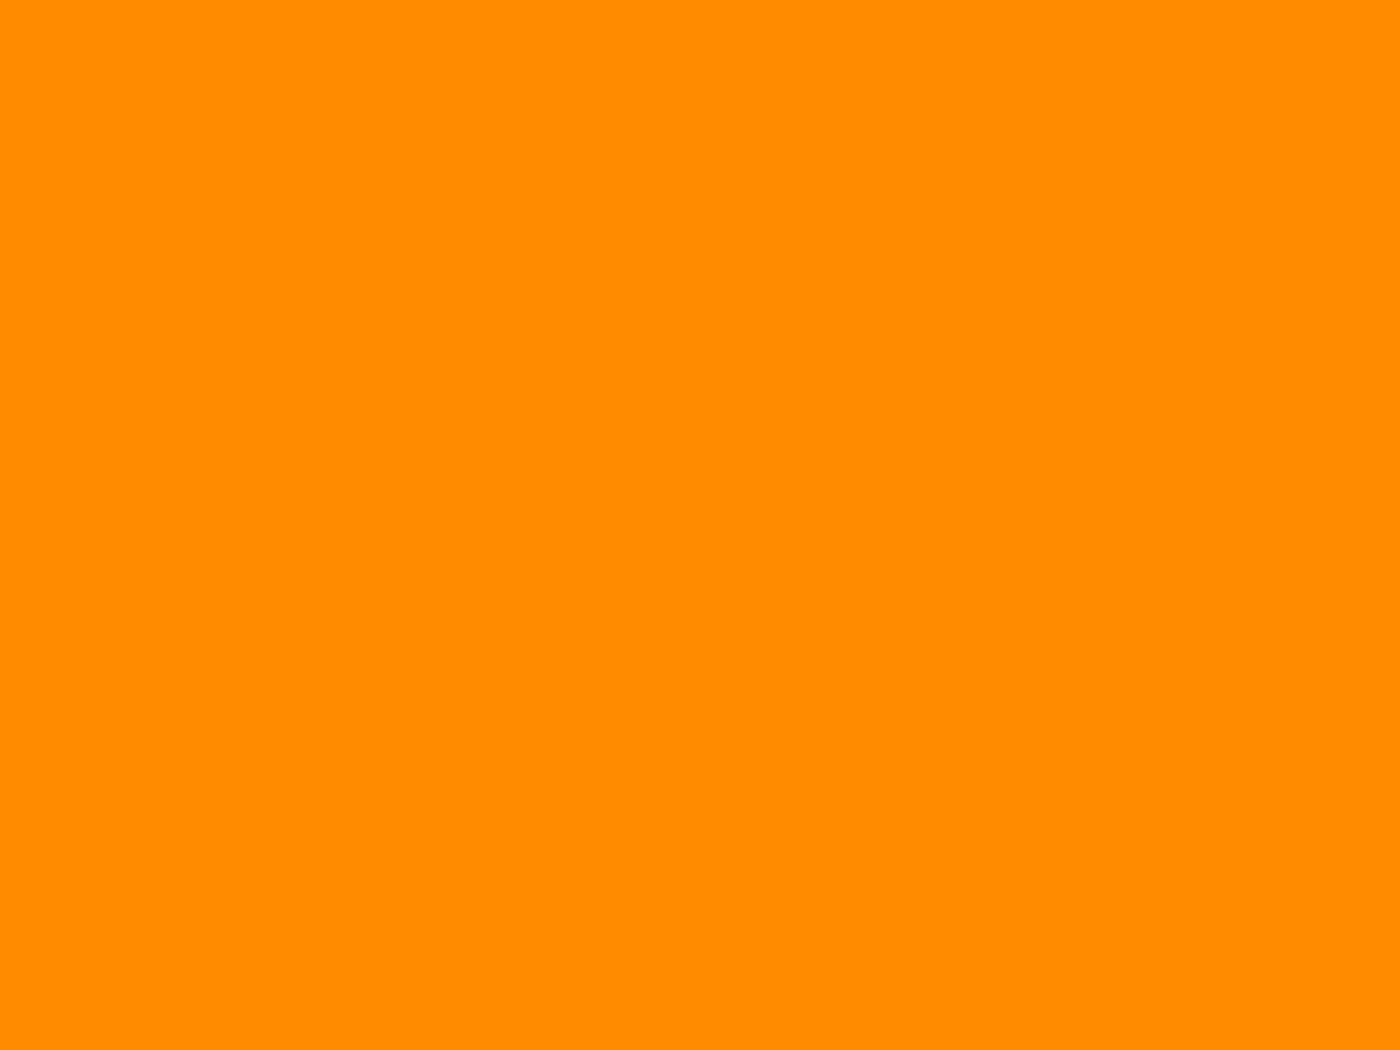  Background orange polos - Bộ sưu tập background polo màu cam đáng yêu và đơn giản